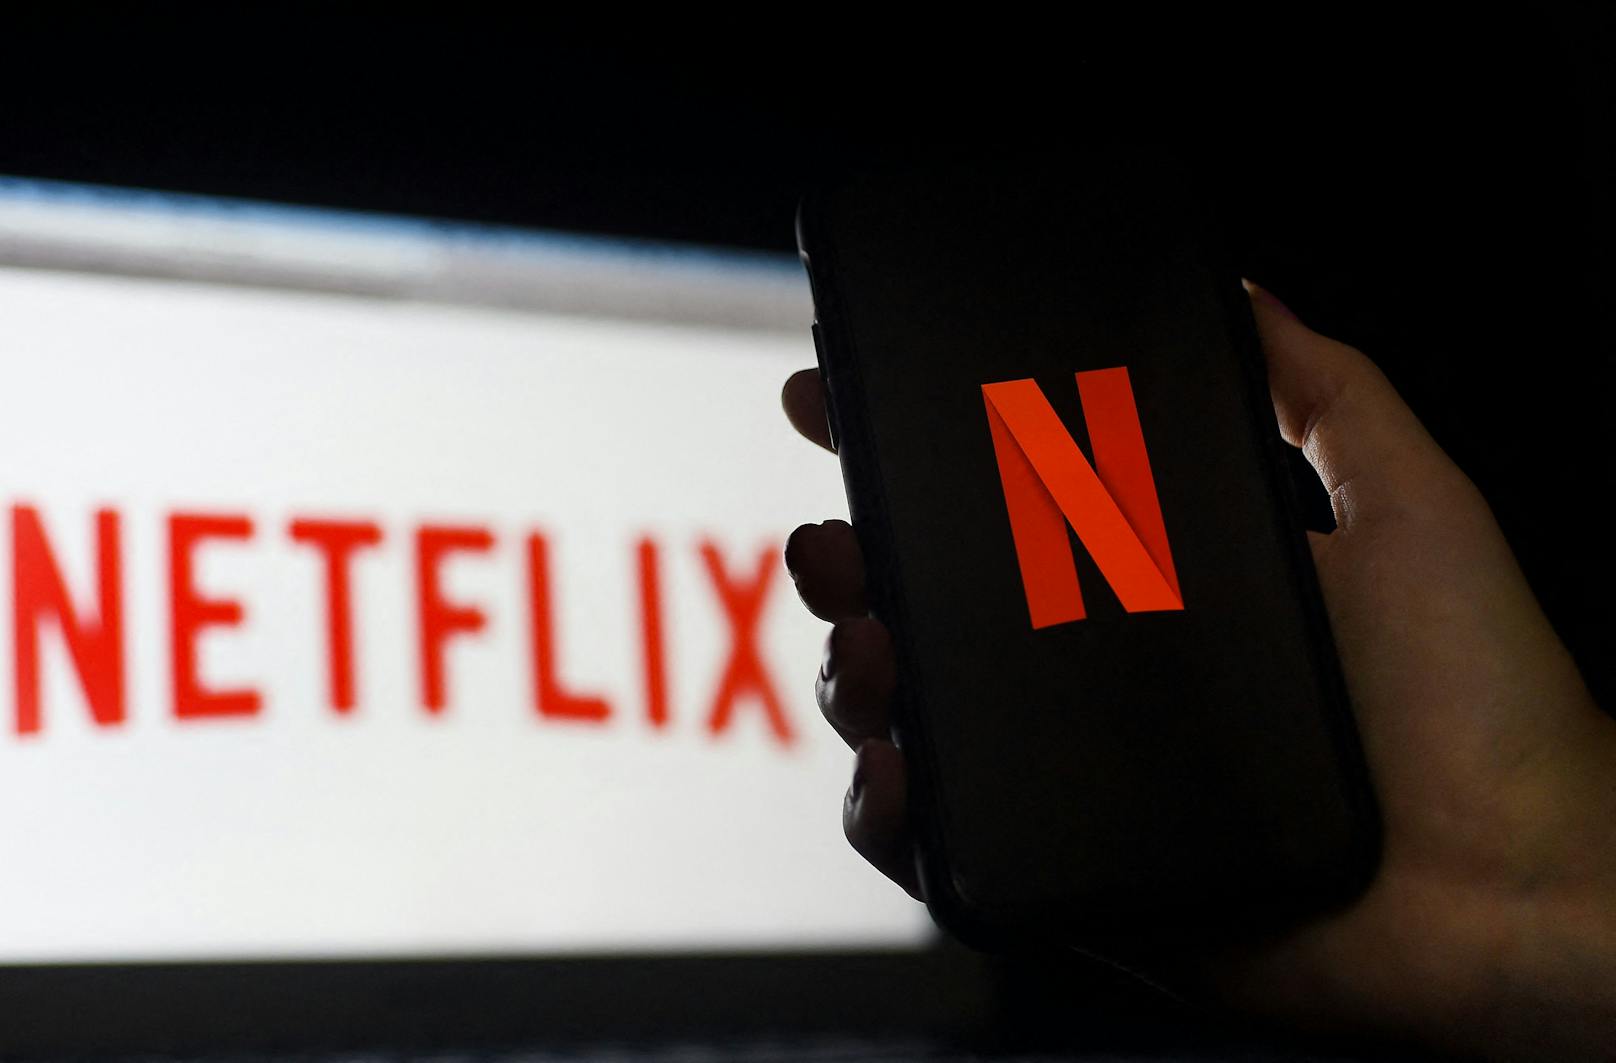 Eine umstrittene Änderung von Netflix steht an. Und zwar schneller als gedacht.